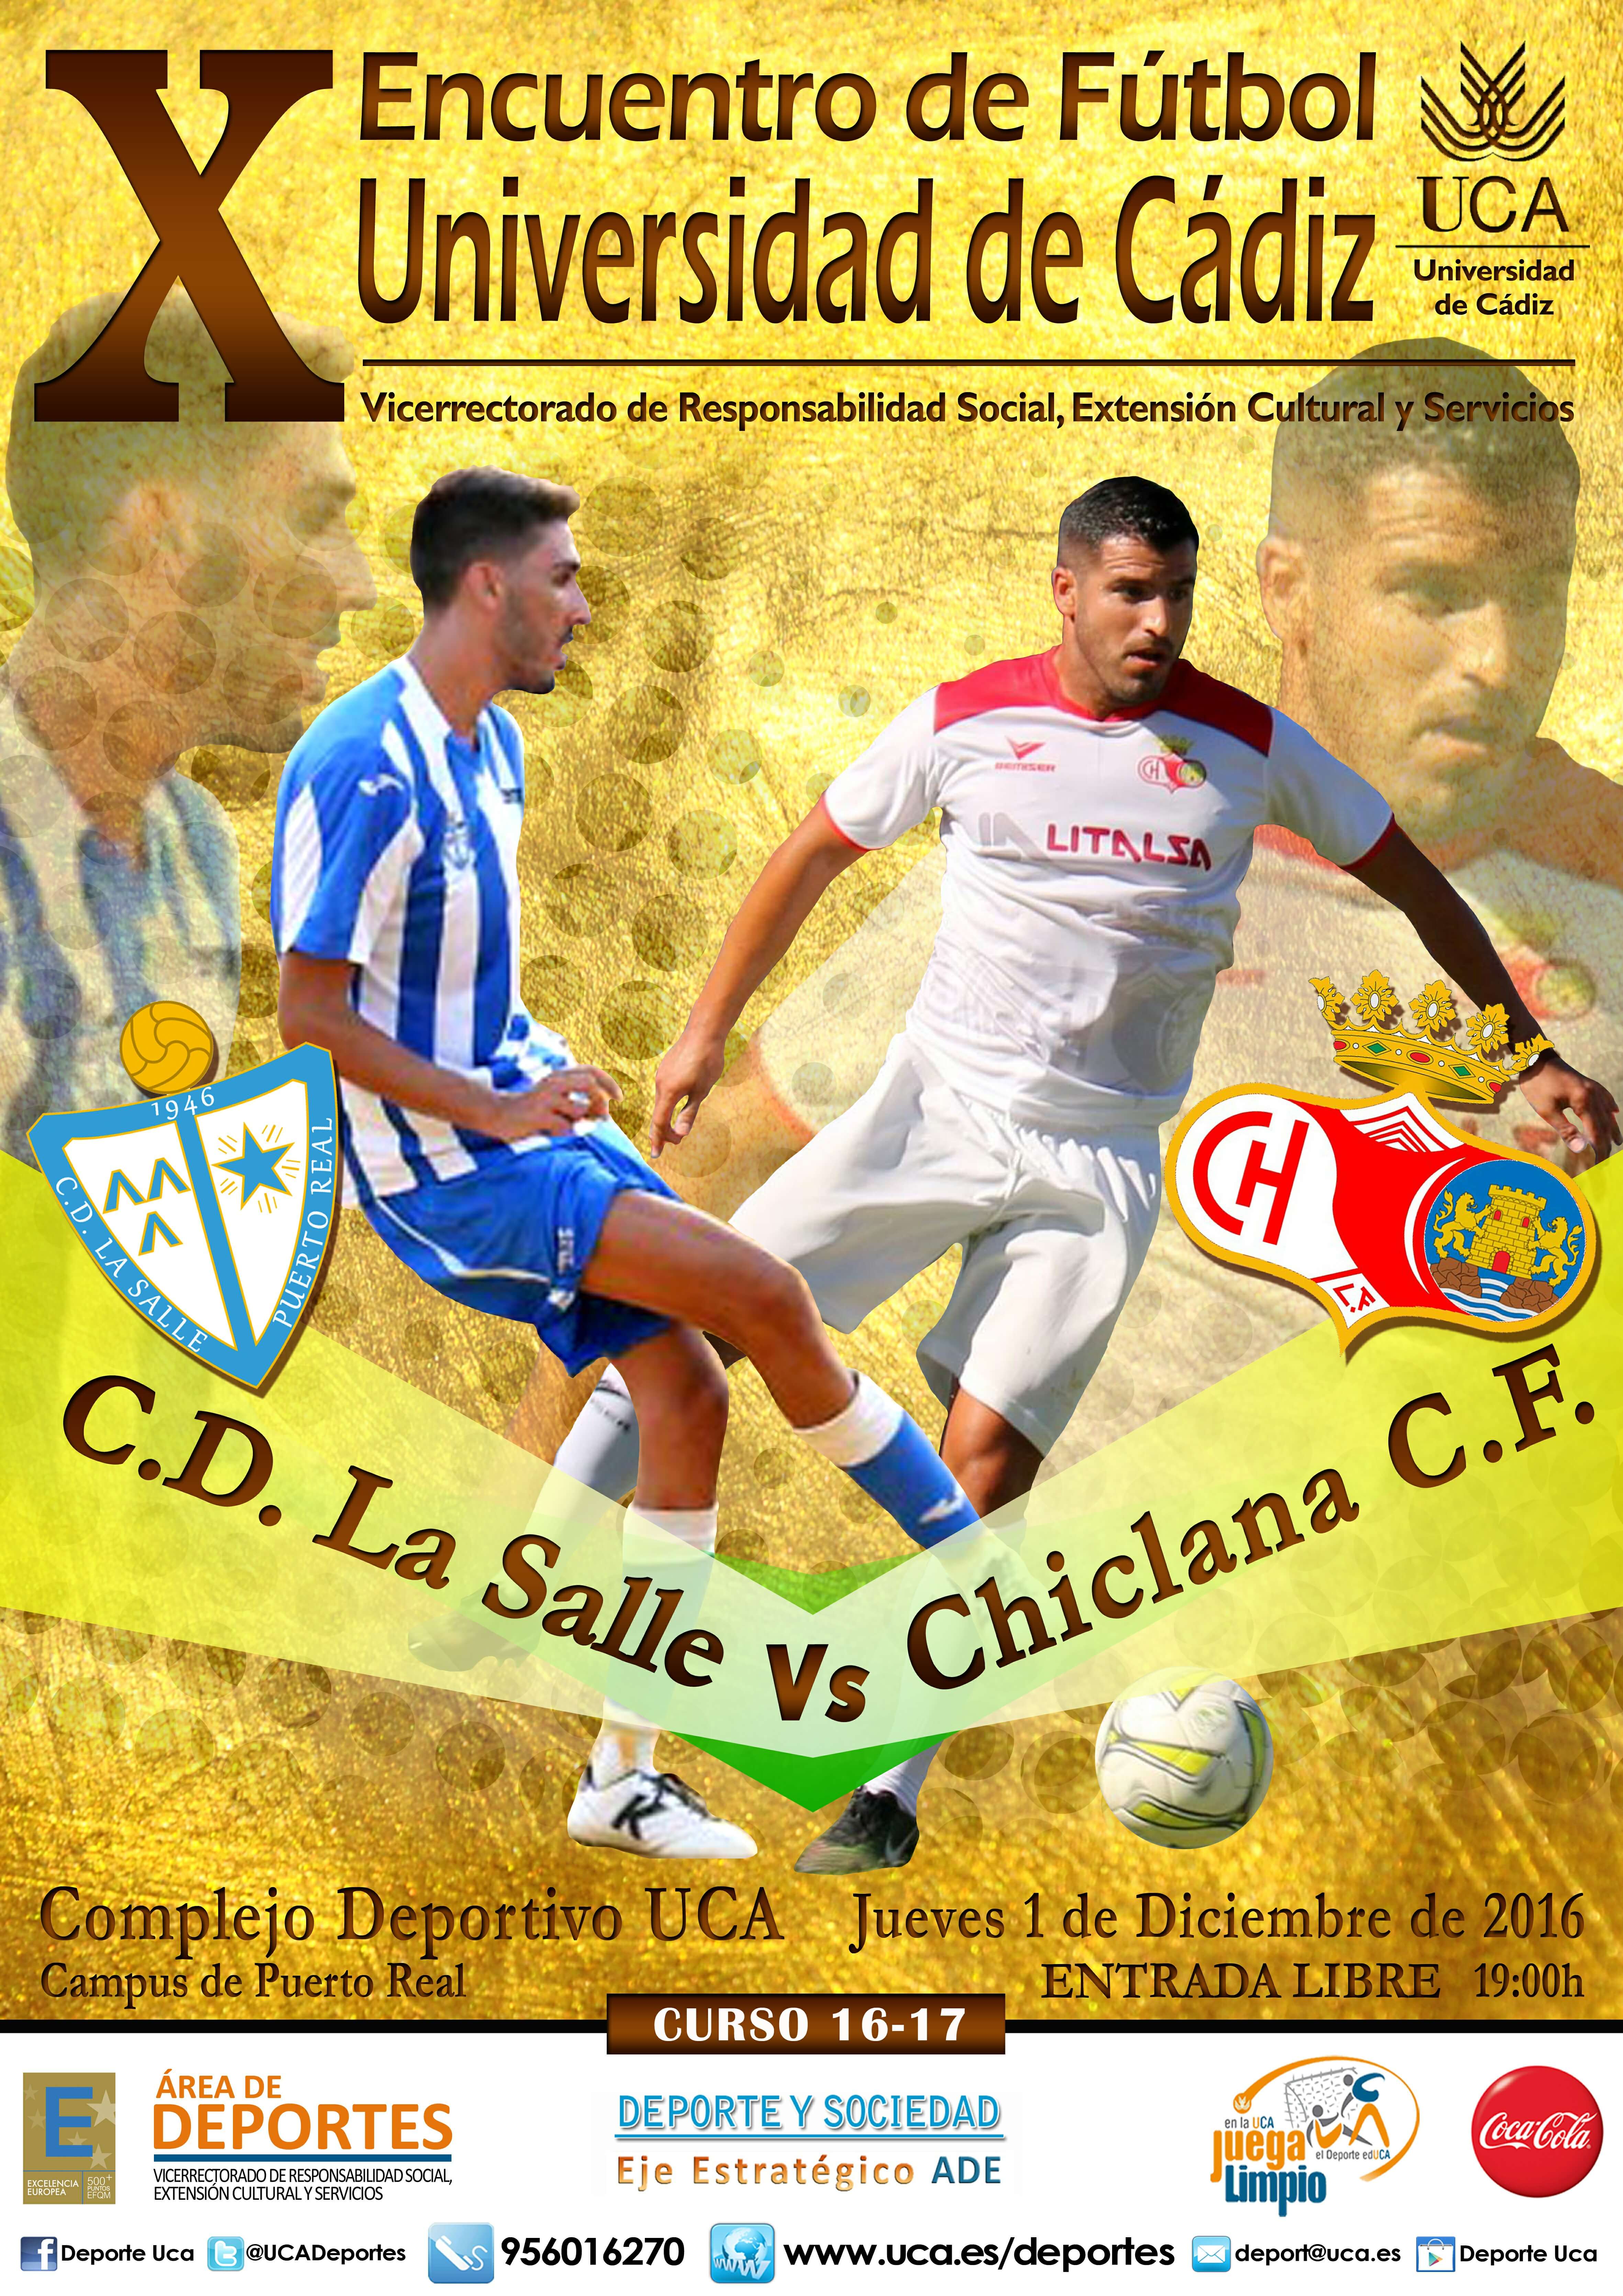 X Encuentro “Fútbol UCA”.